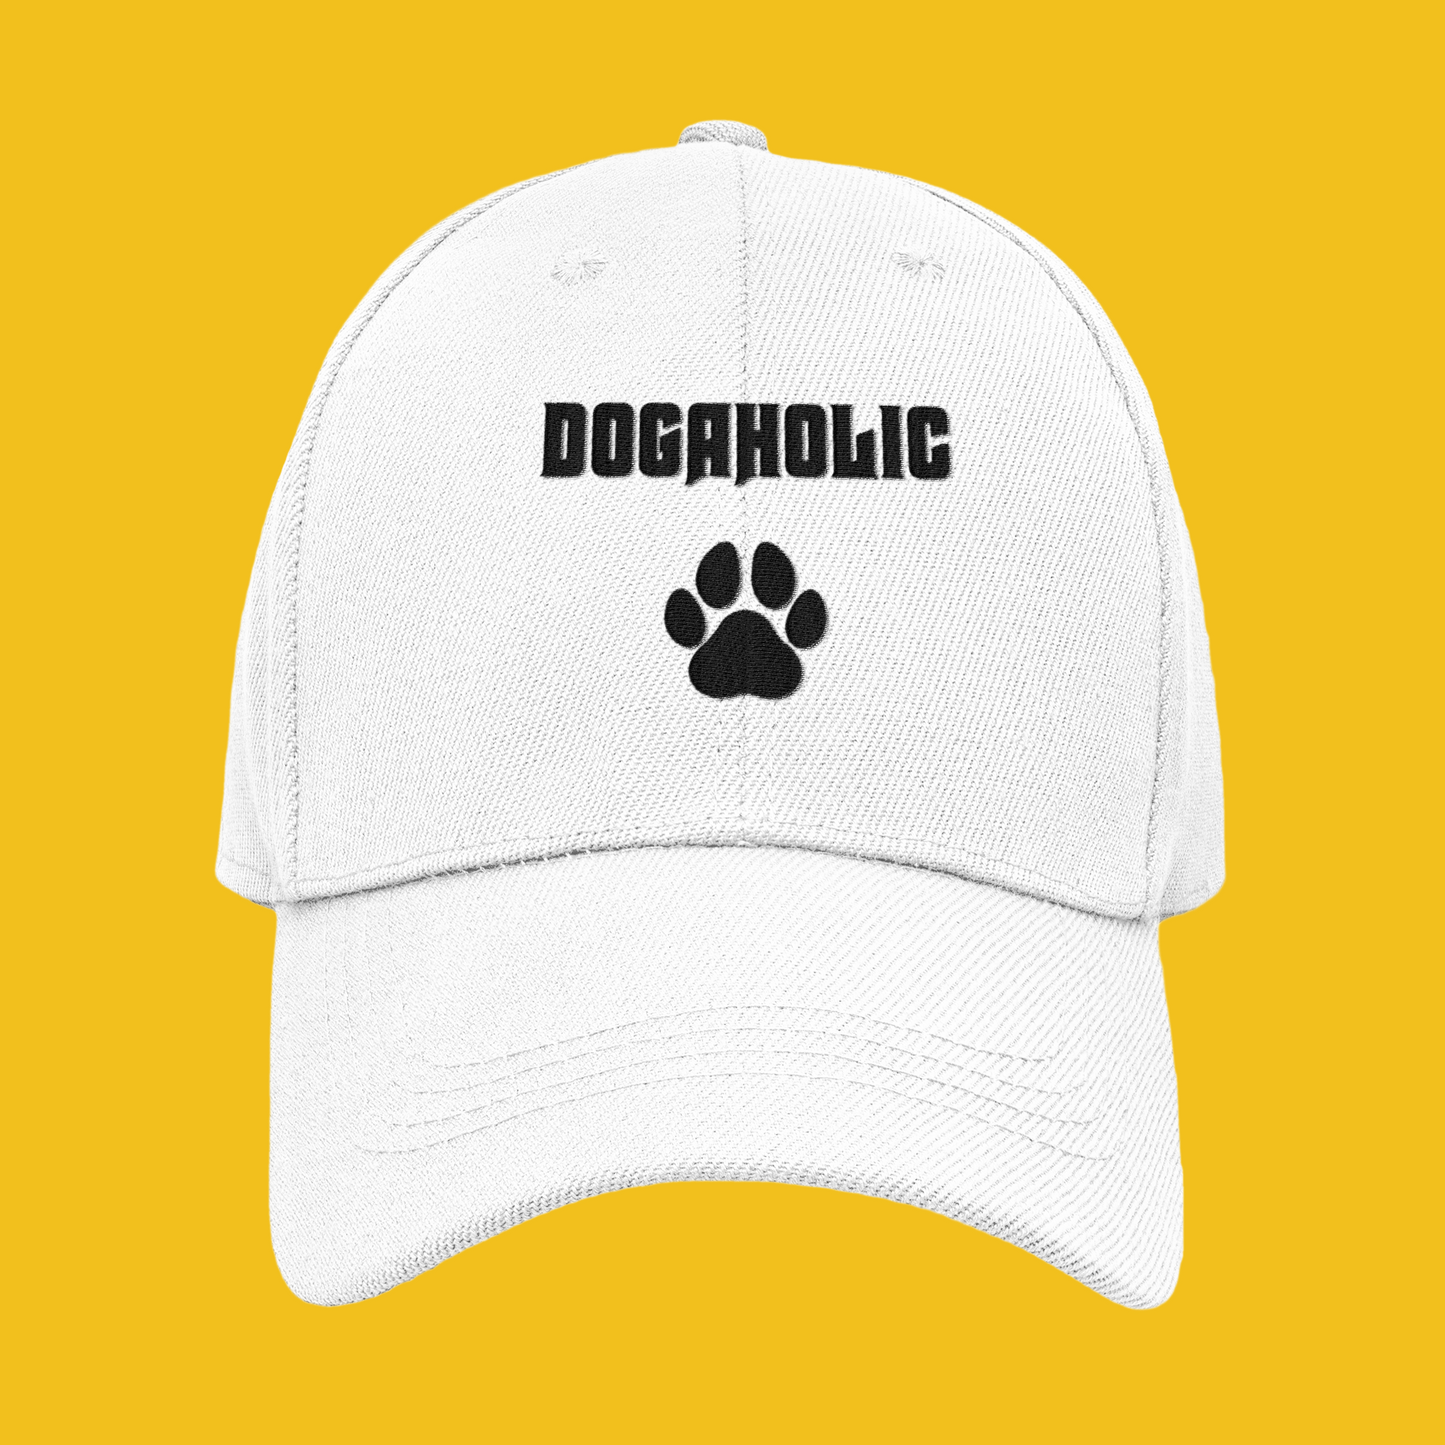 Dogoholic / Köpekkolik Şapkası. TontikShop Şapka Serisi